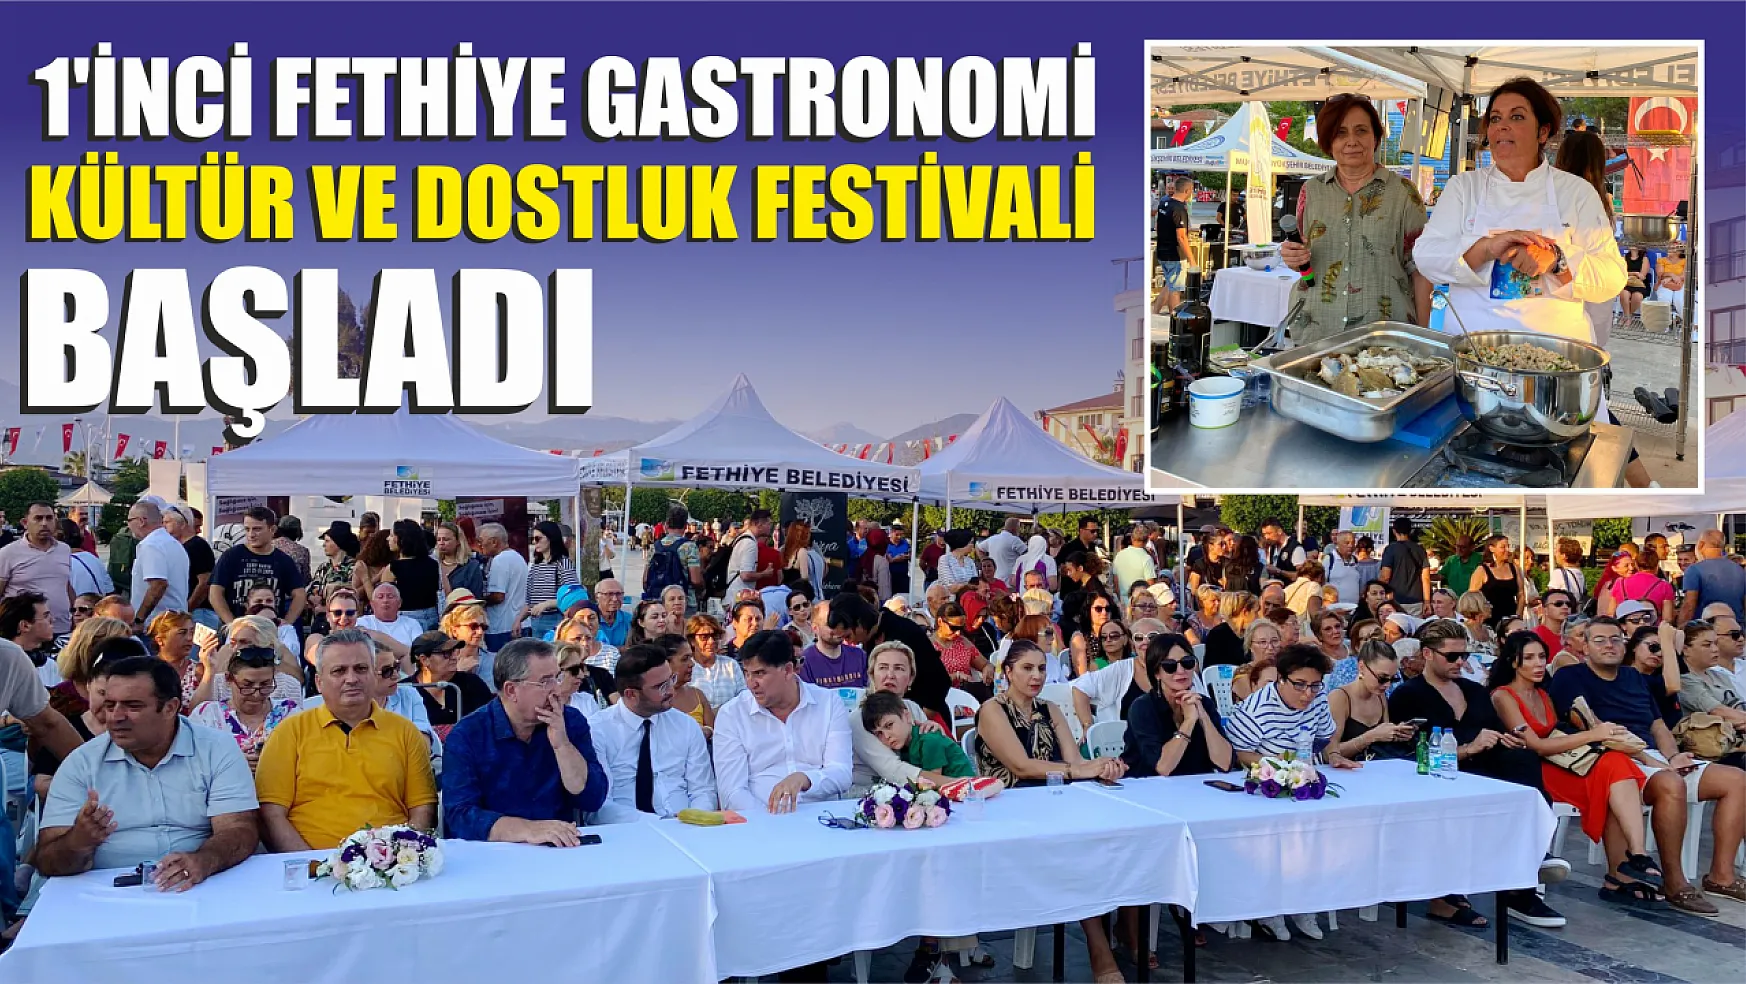 1'inci Fethiye Gastronomi Kültür ve Dostluk Festivali Başladı